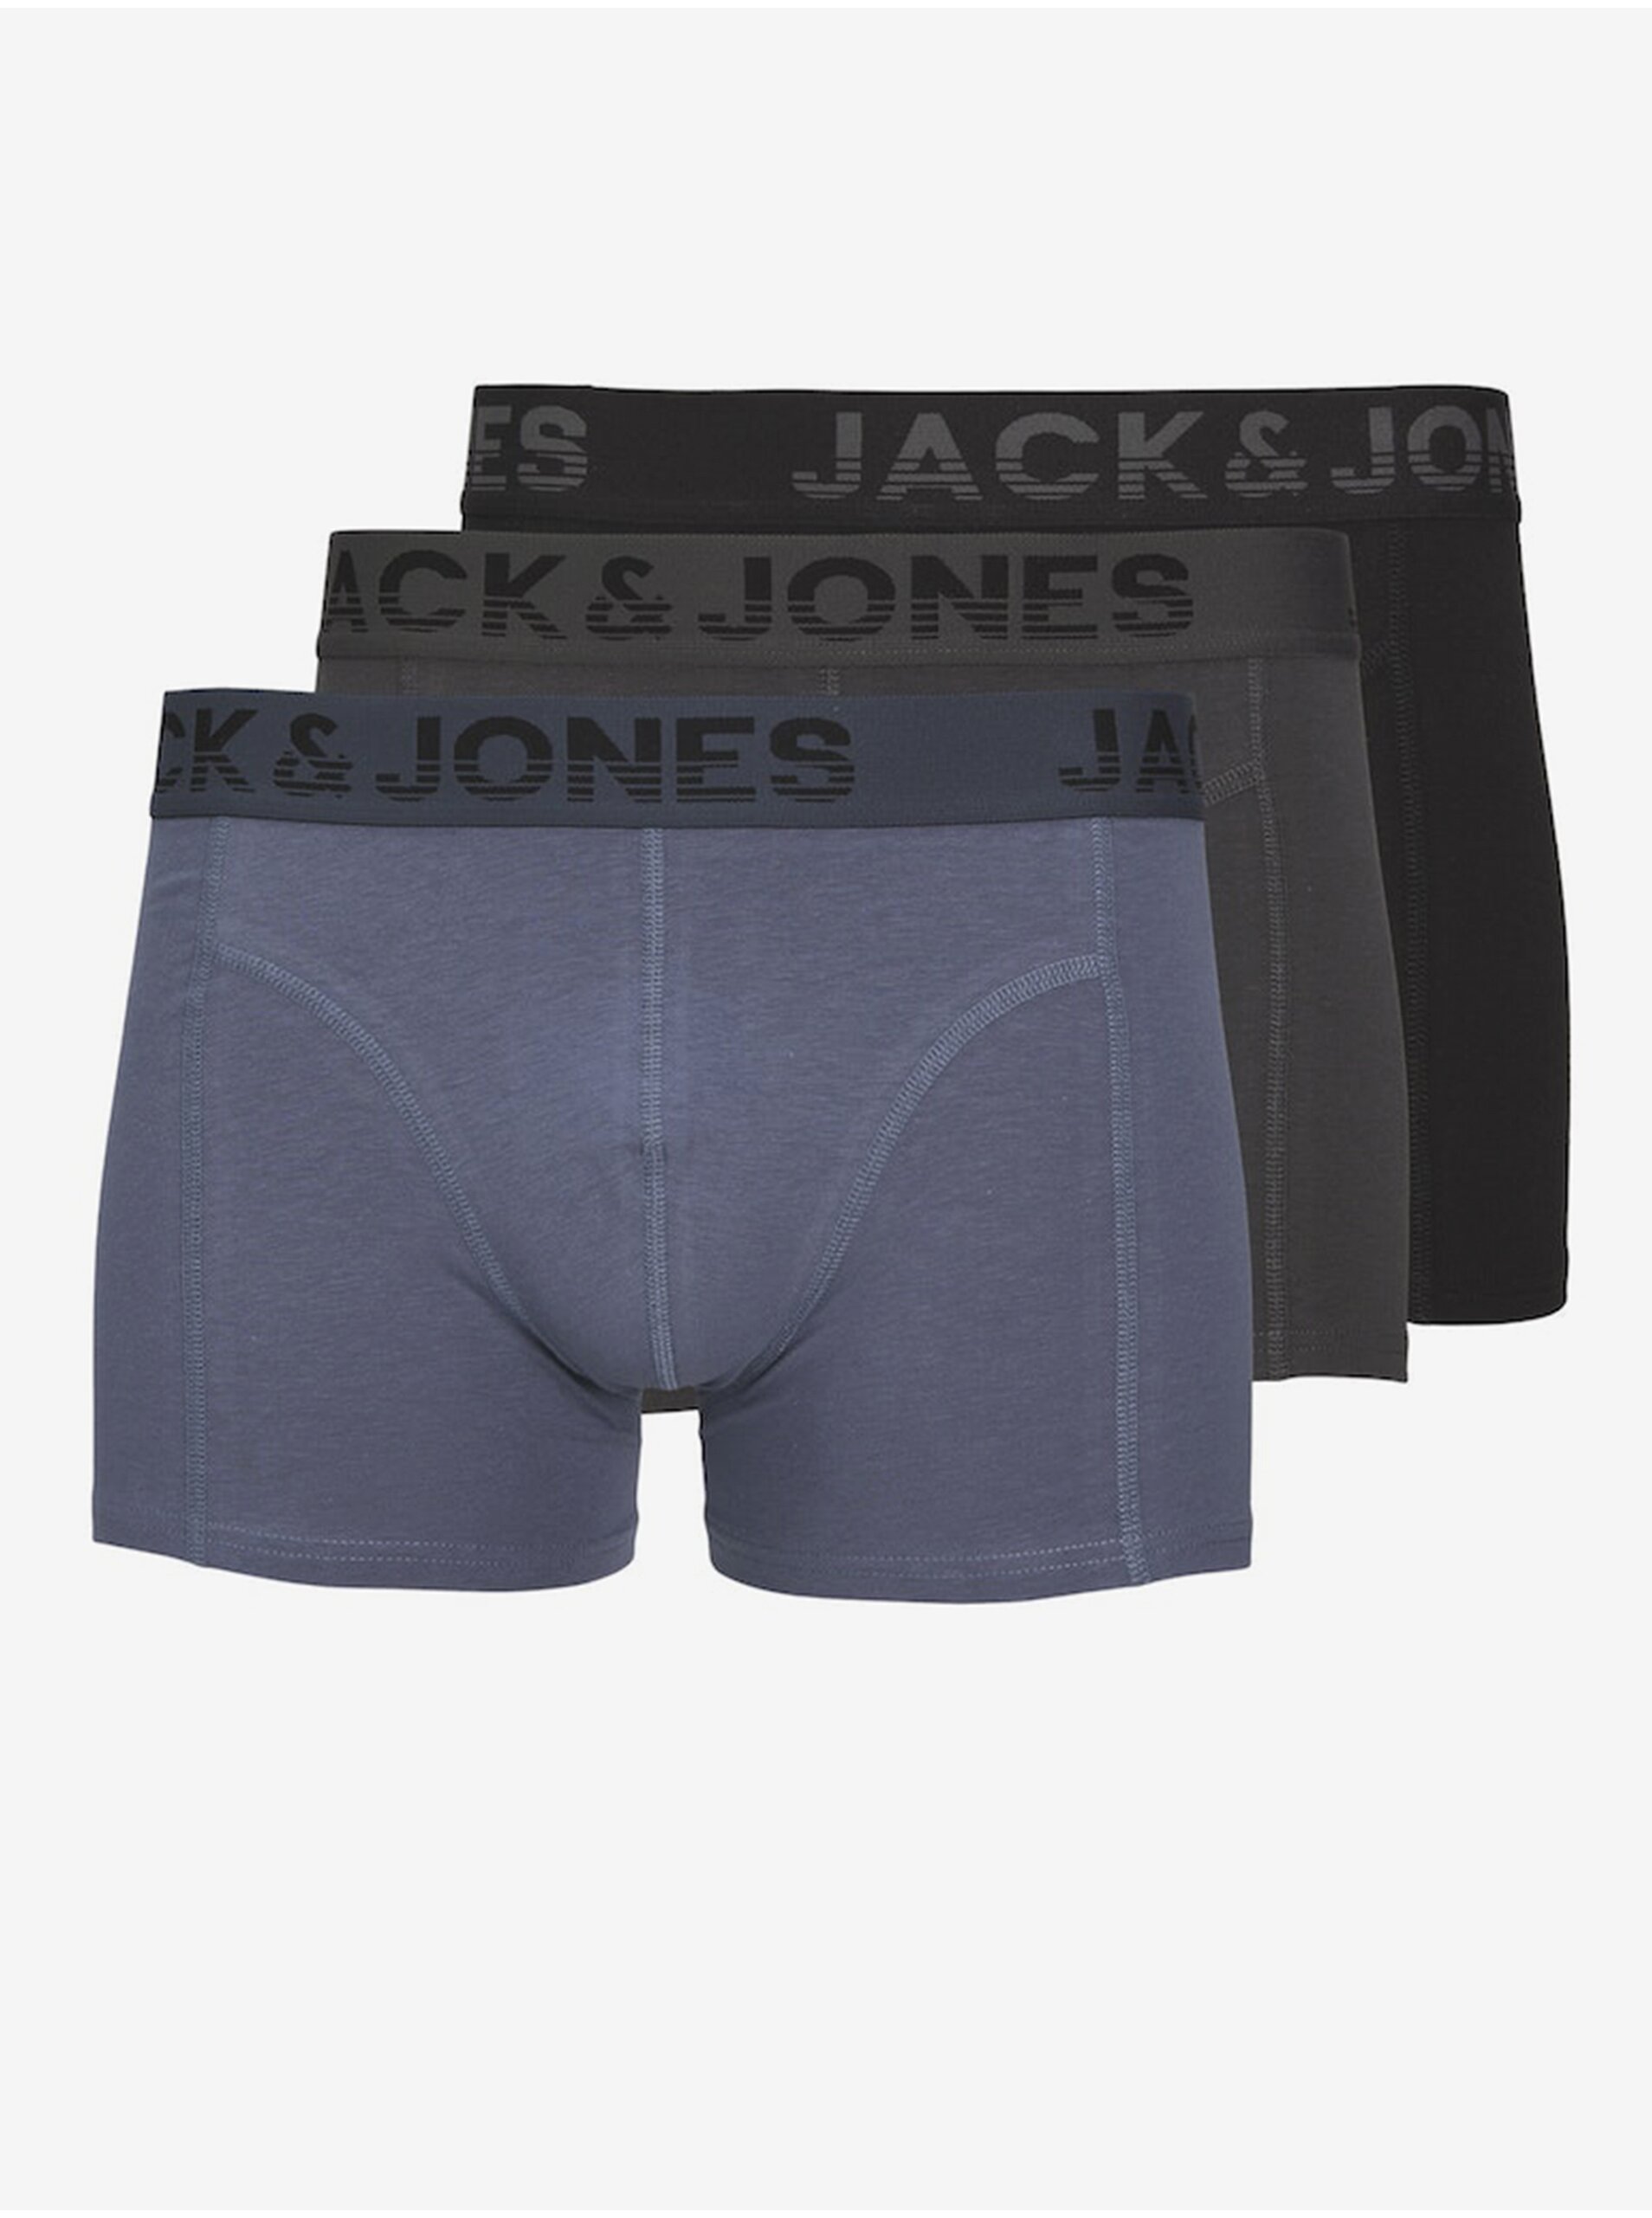 E-shop Súprava troch pánskych boxeriek v čiernej, šedej a modrej farbe Jack & Jones